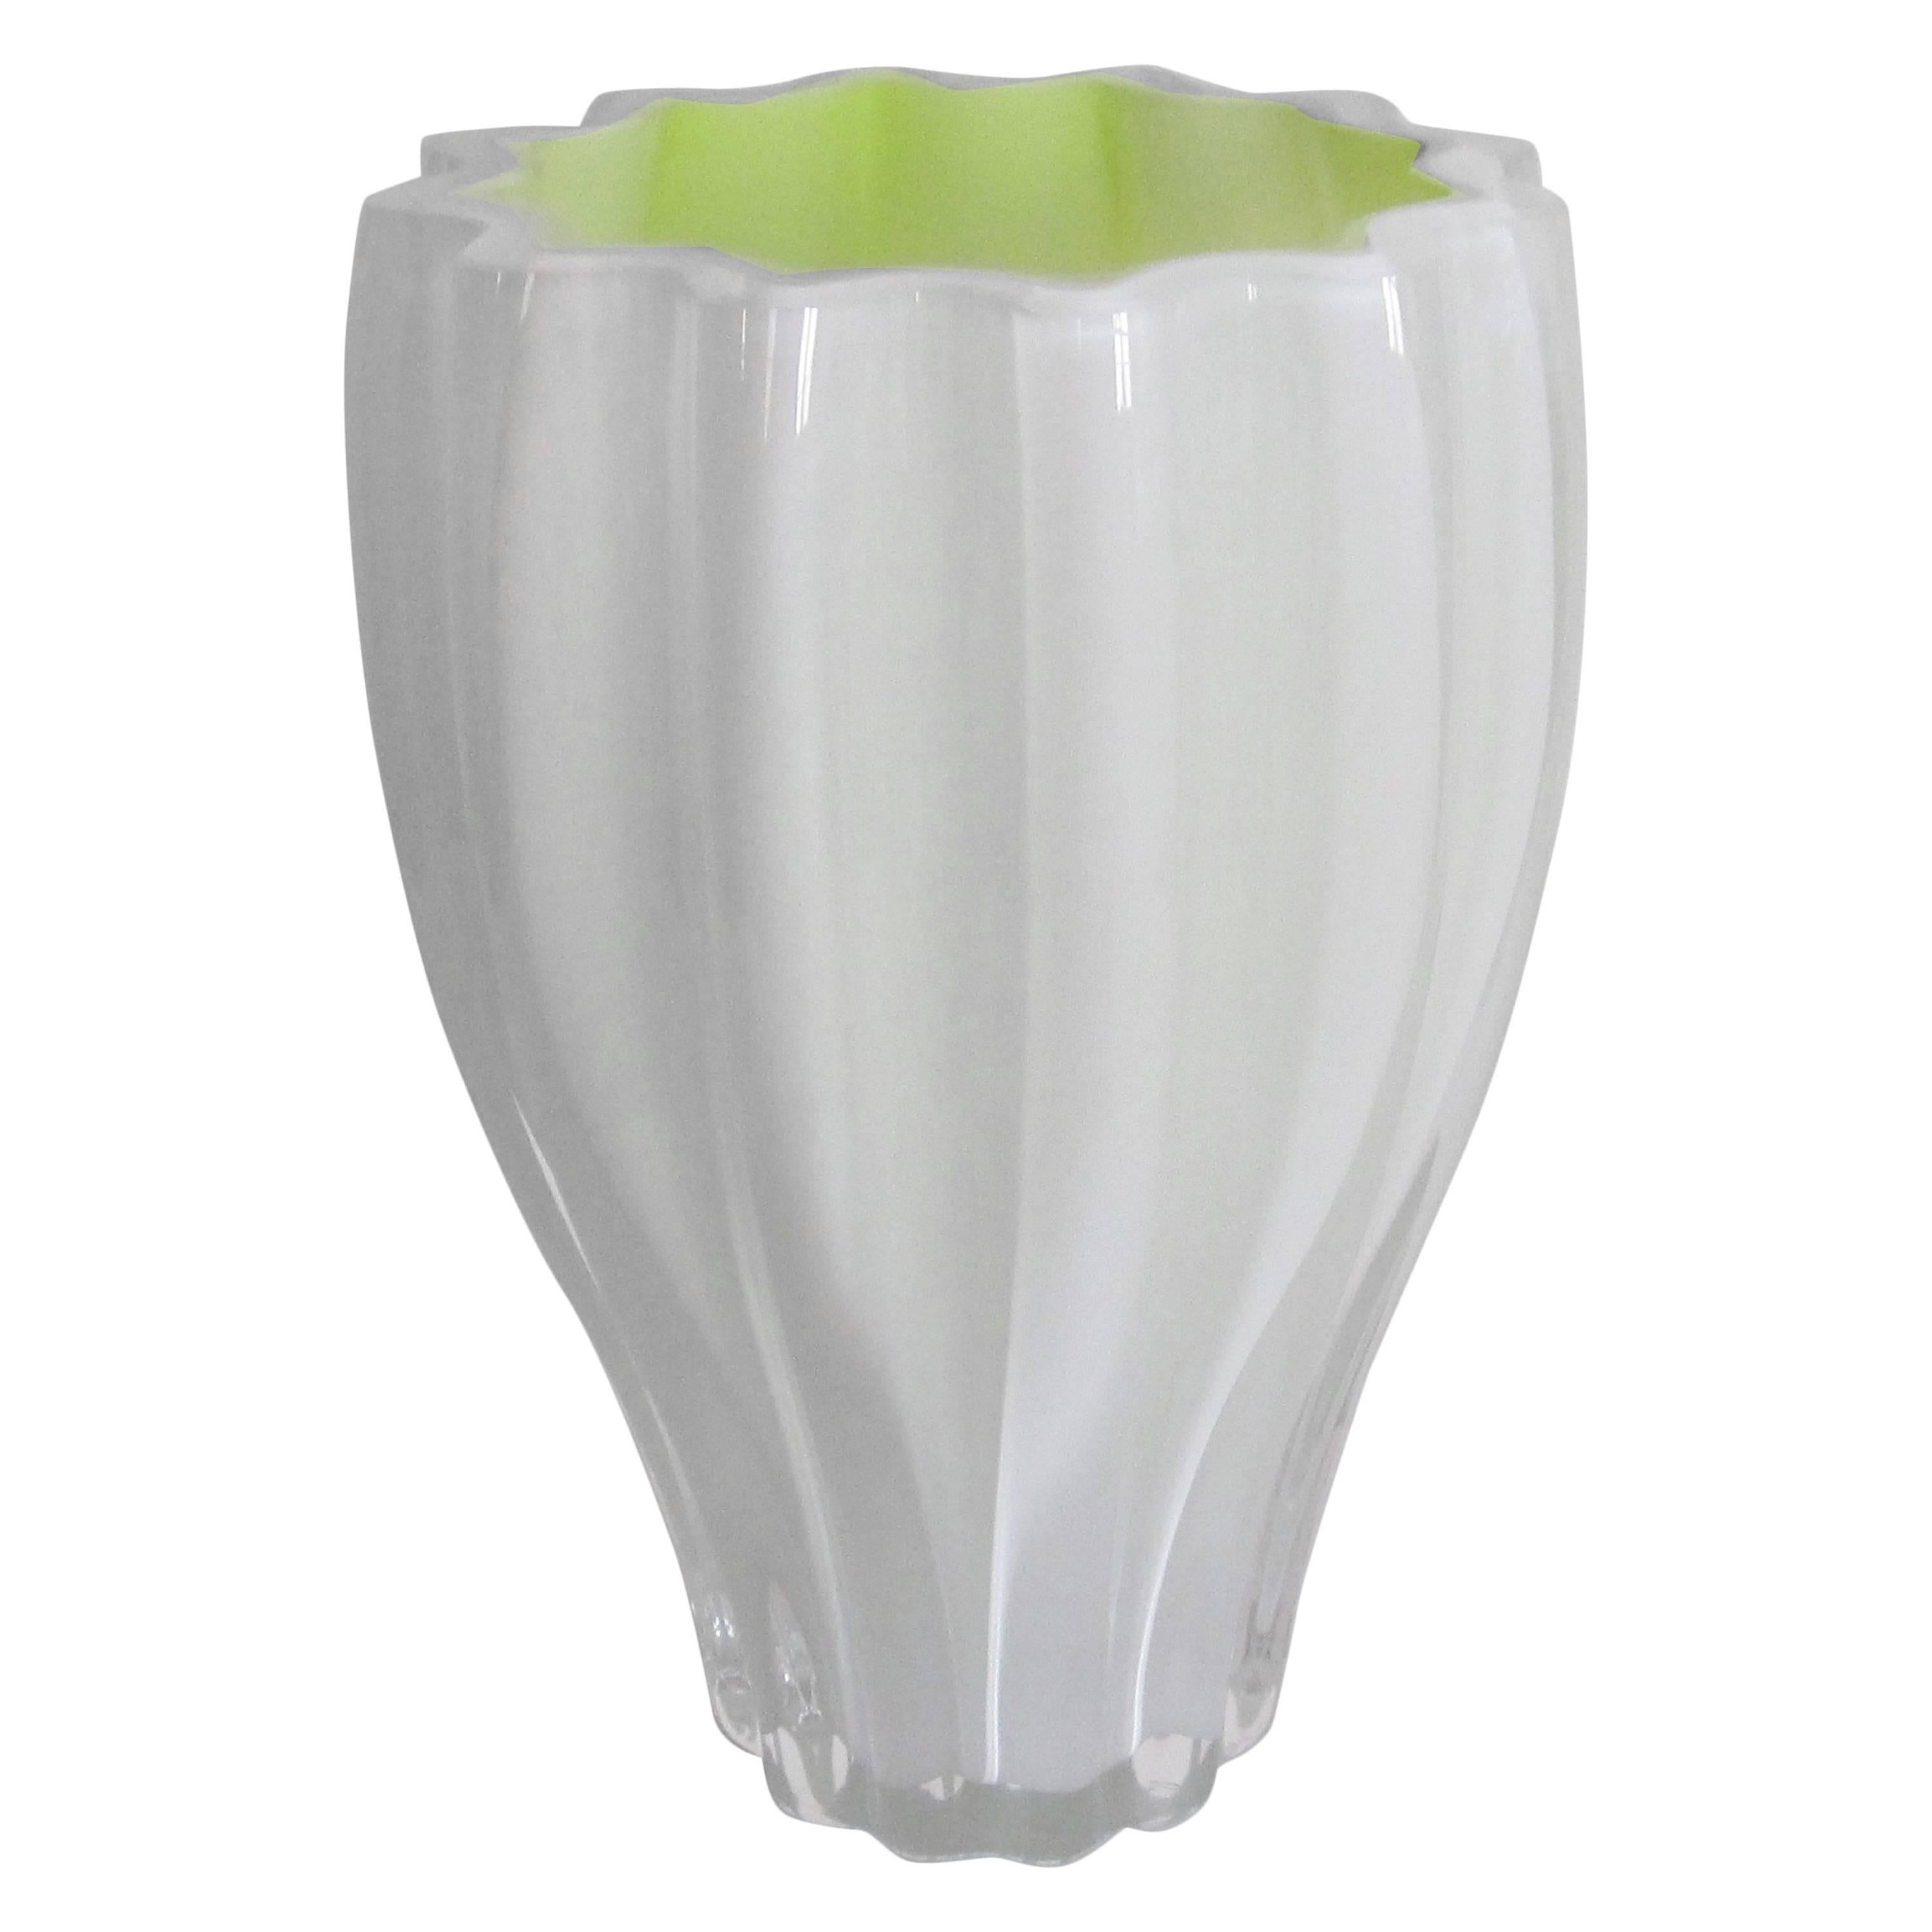 Postmodern Art Glass Vase from Sweden